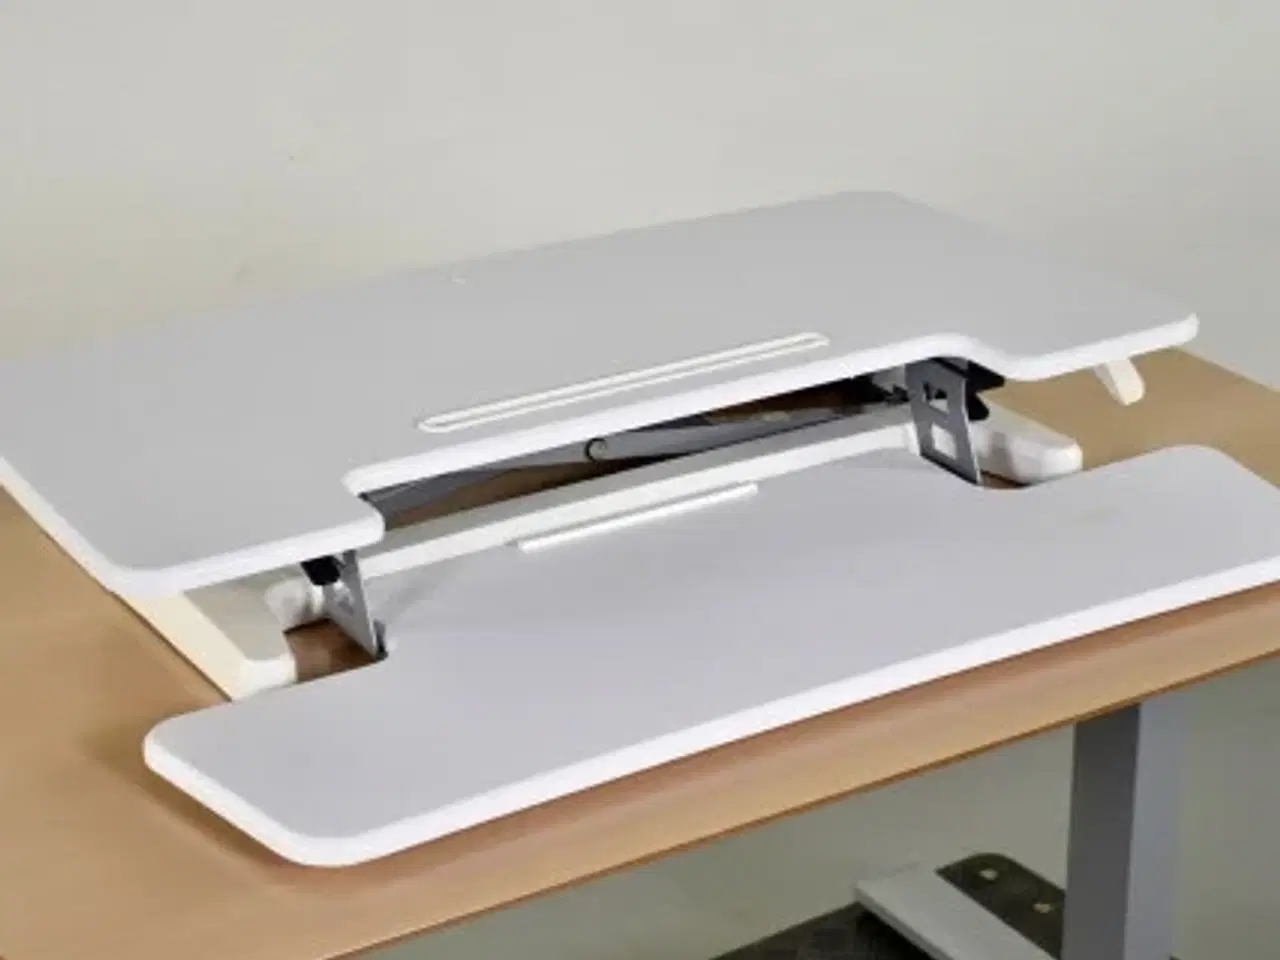 Billede 1 - Sit-stand desk riser - omdan dit bord til et hæve-/sænkebord